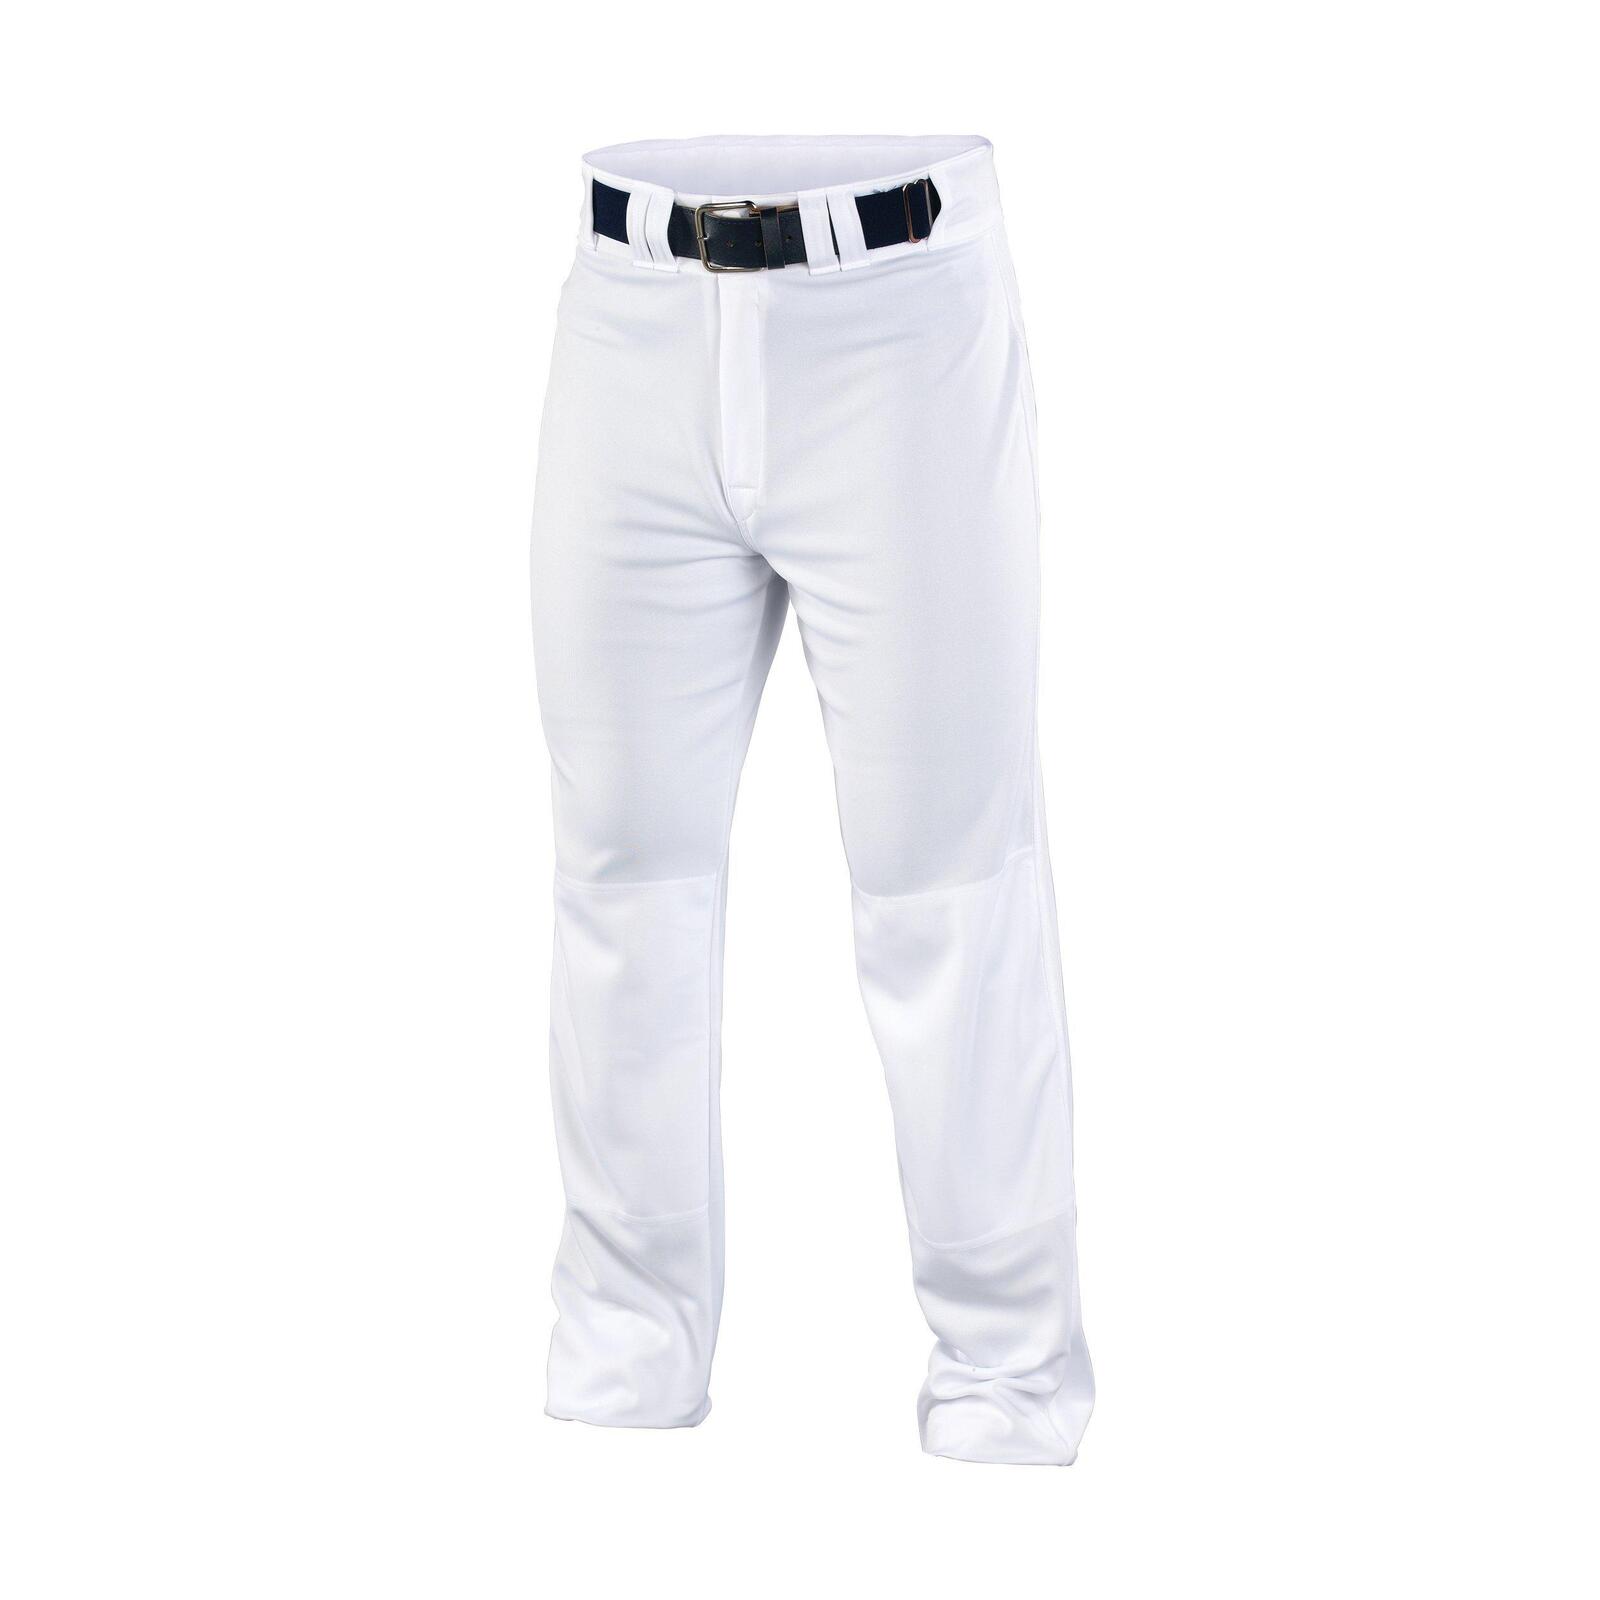 Easton Rival 2 Belt Loop Baseball Pants - White